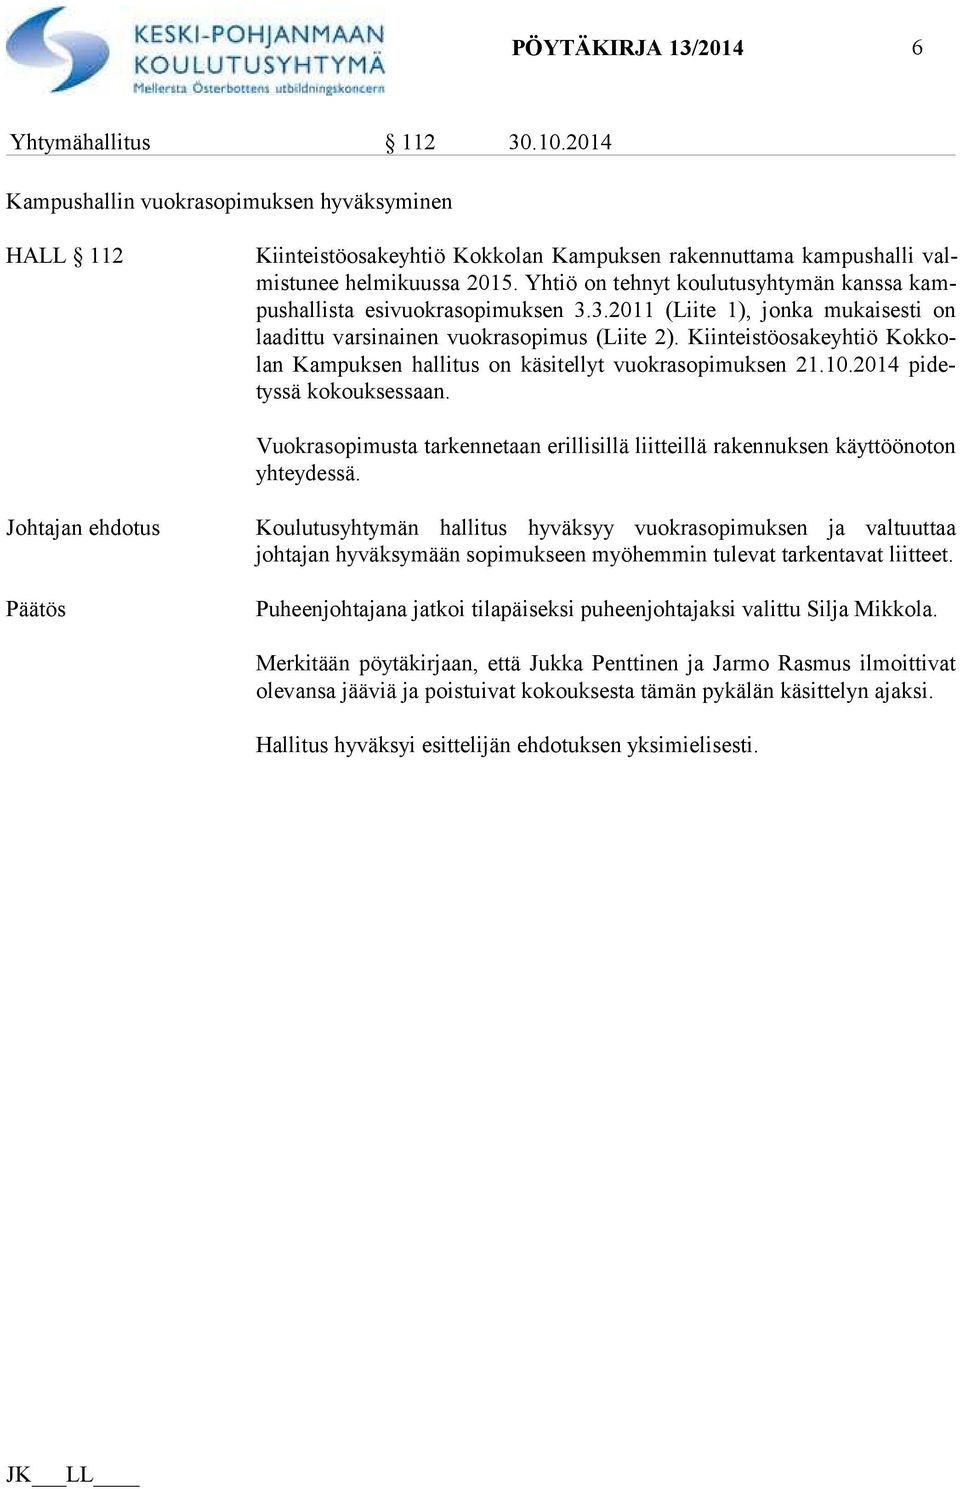 Kiinteistöosakeyhtiö Kok kolan Kampuksen hallitus on käsitellyt vuokrasopimuksen 21.10.2014 pi detys sä kokouksessaan.